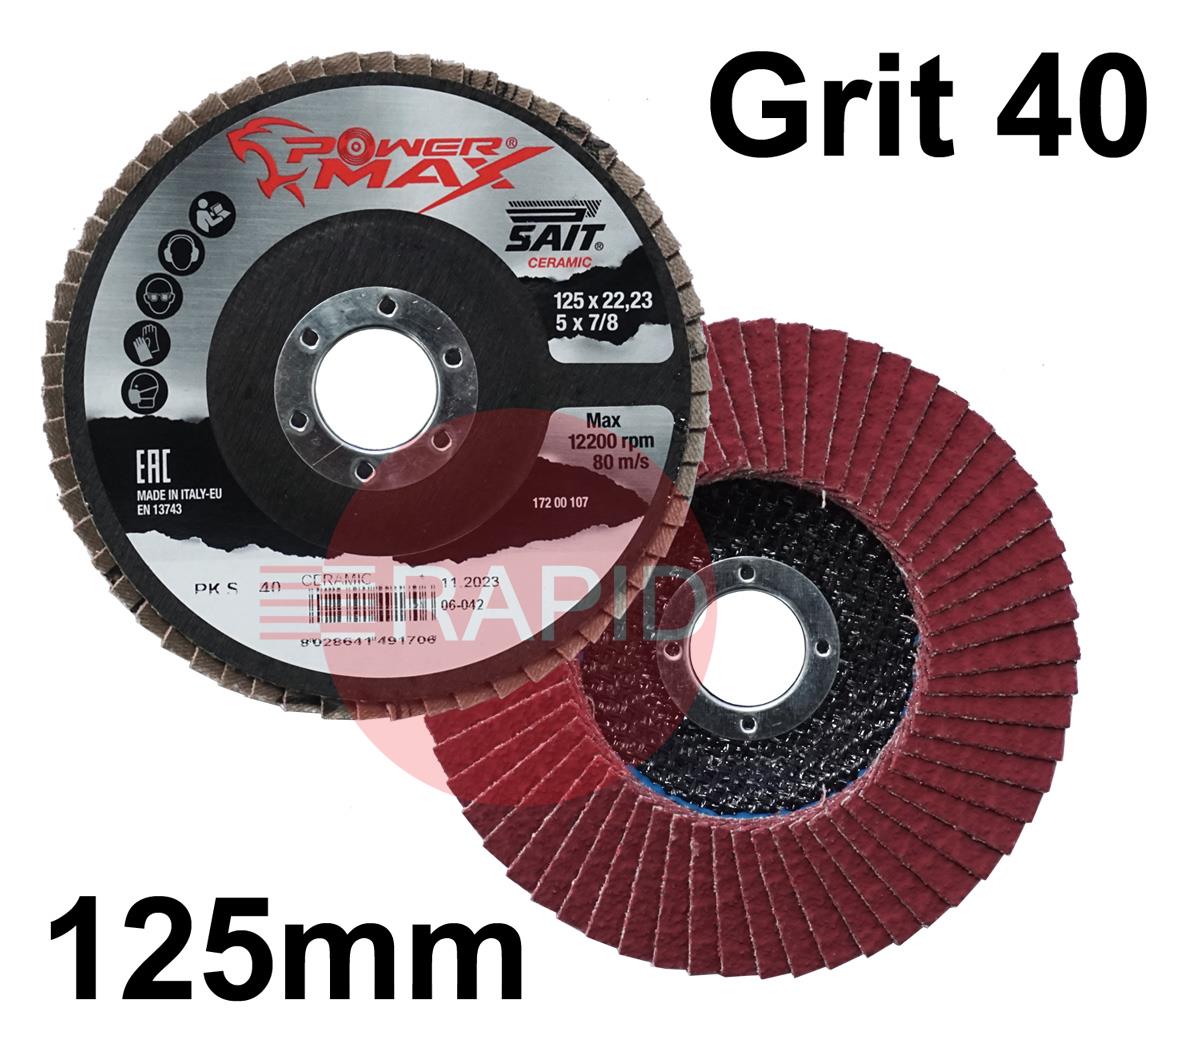 049170  SAIT Powermax-PK S 125mm (5) Ceramic Flap Disc - Grit 40